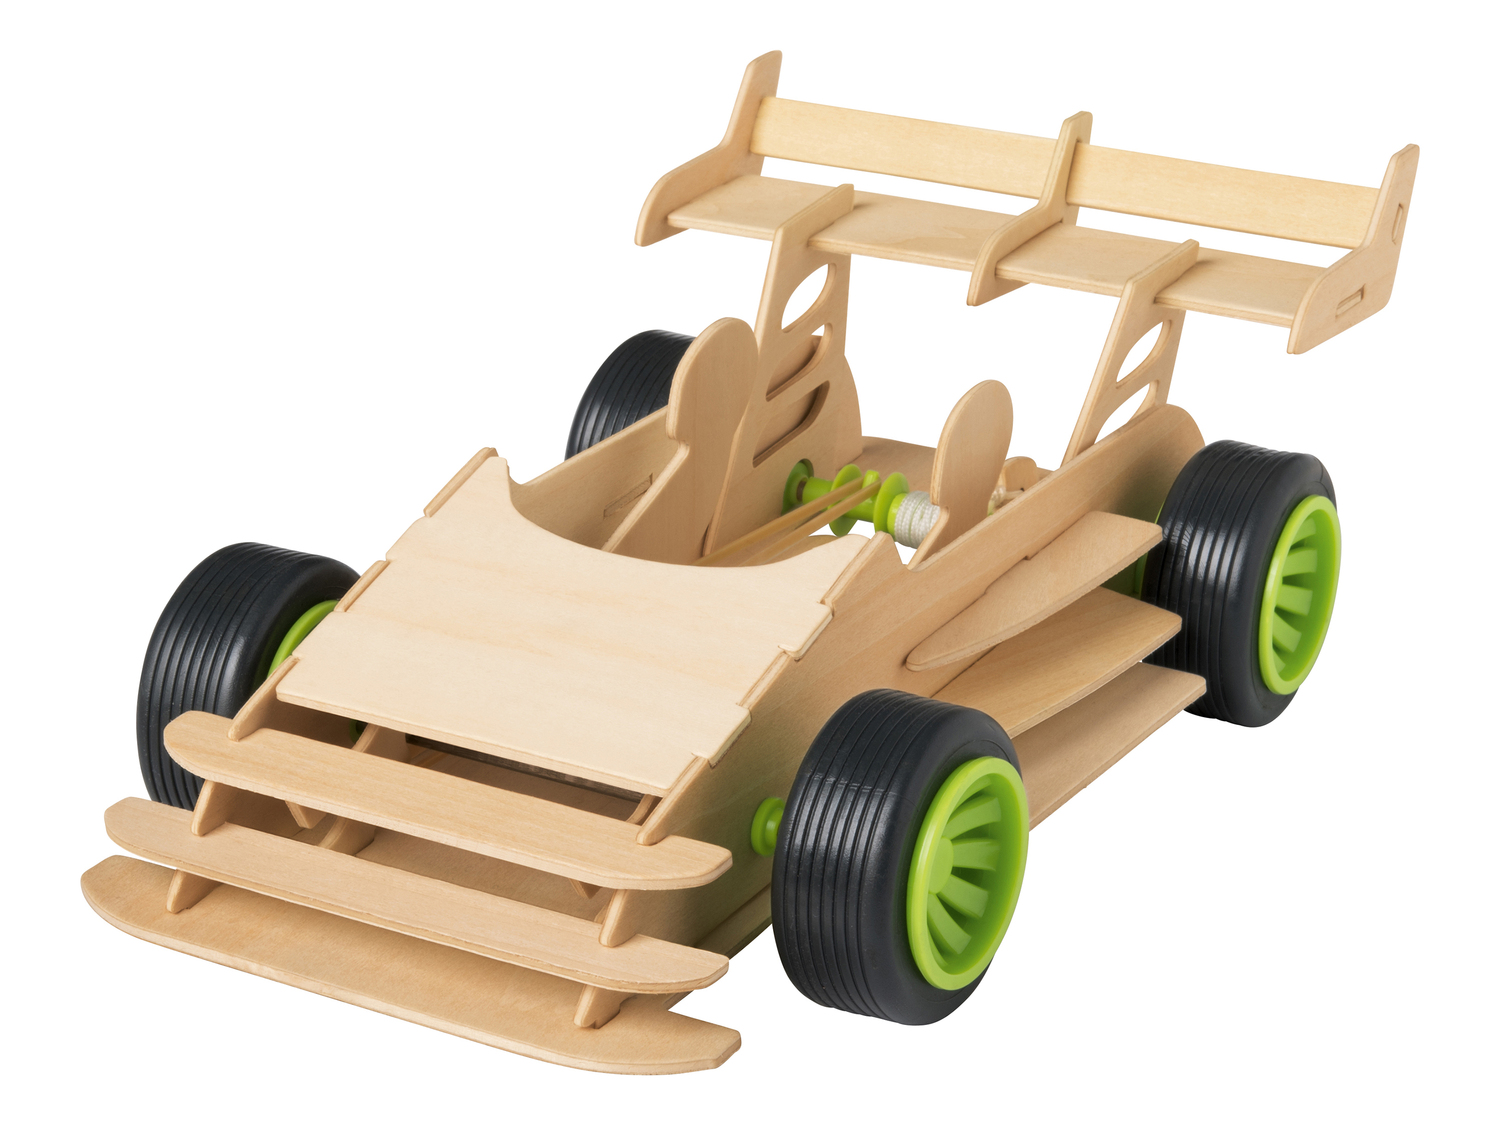 Set modellino in legno da costruire Playtive Junior, prezzo 9.99 &#8364; 

Caratteristiche

- ...